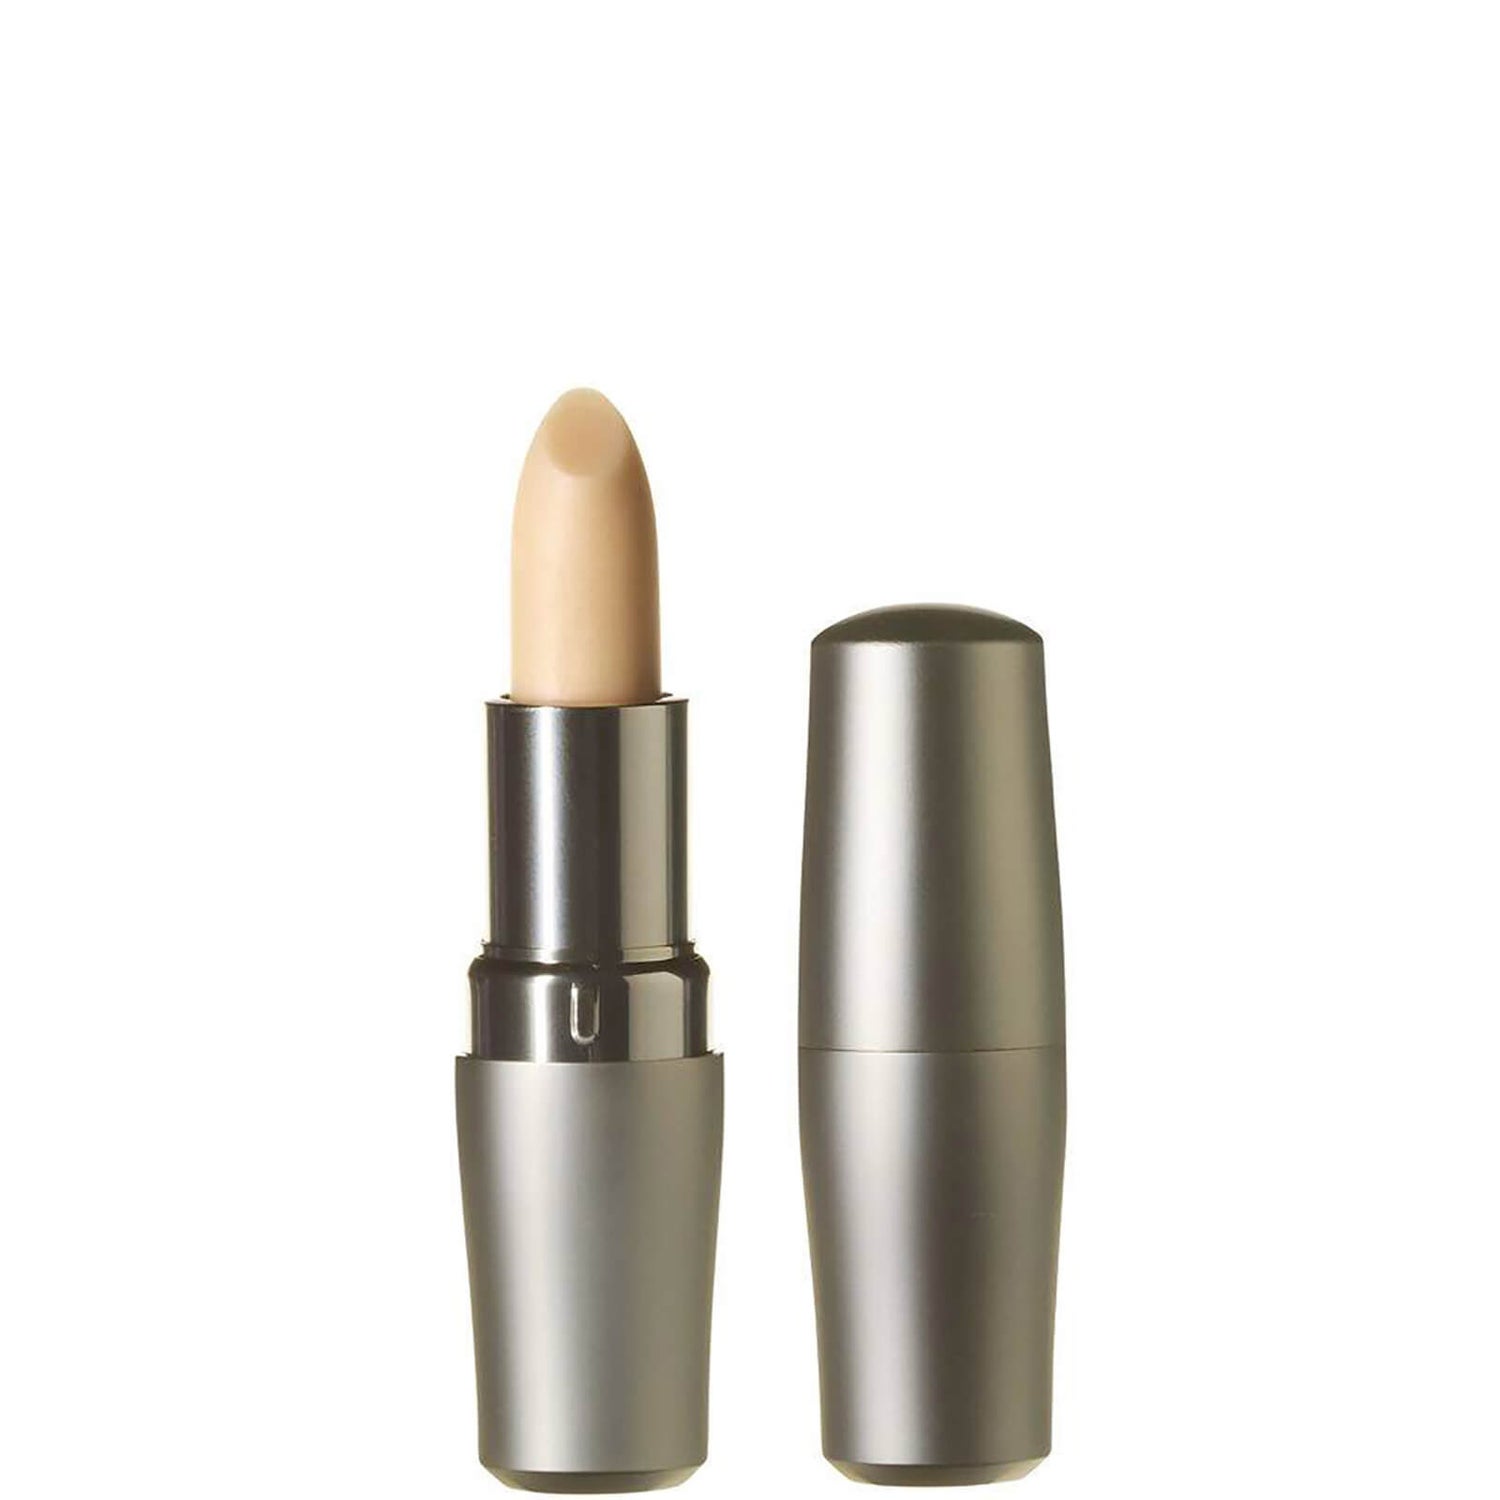 Shiseido The Skincare Essentials Protective Lip Conditioner (資生堂 ザ スキンケア エッセンシャルズ プロテクティブ リップ コンディショナー) (4g)